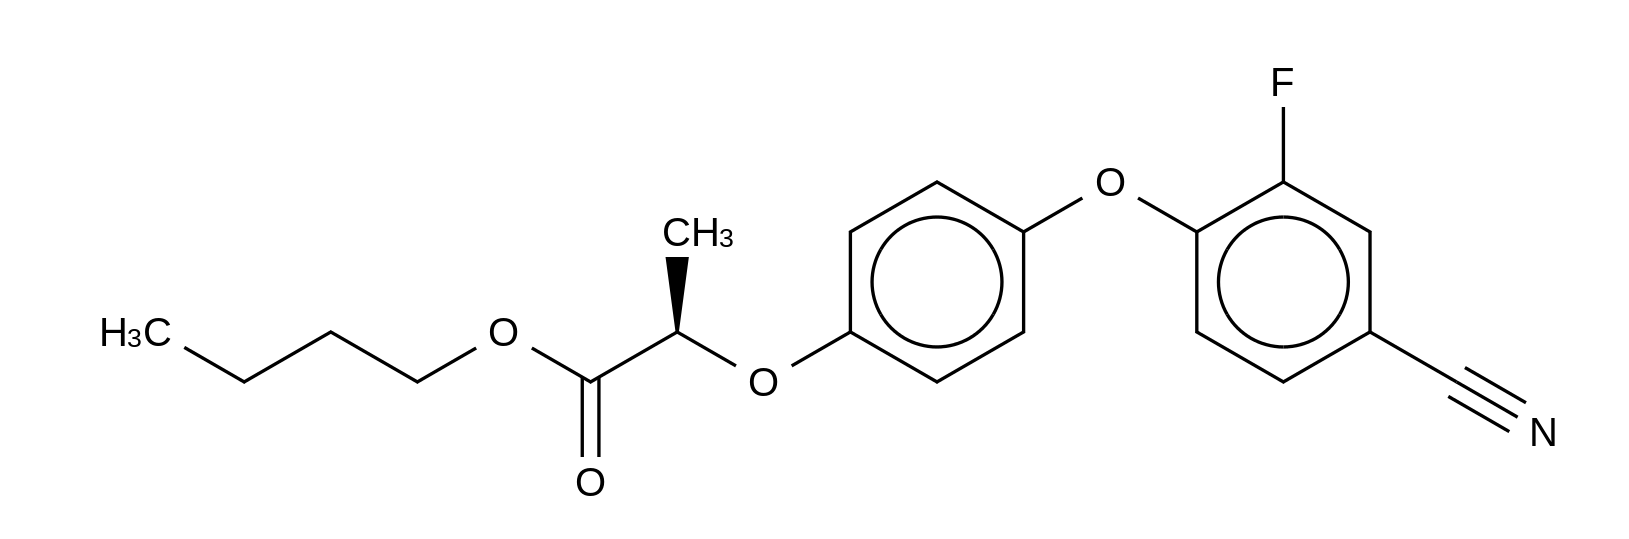 Cyhalofop-butyl